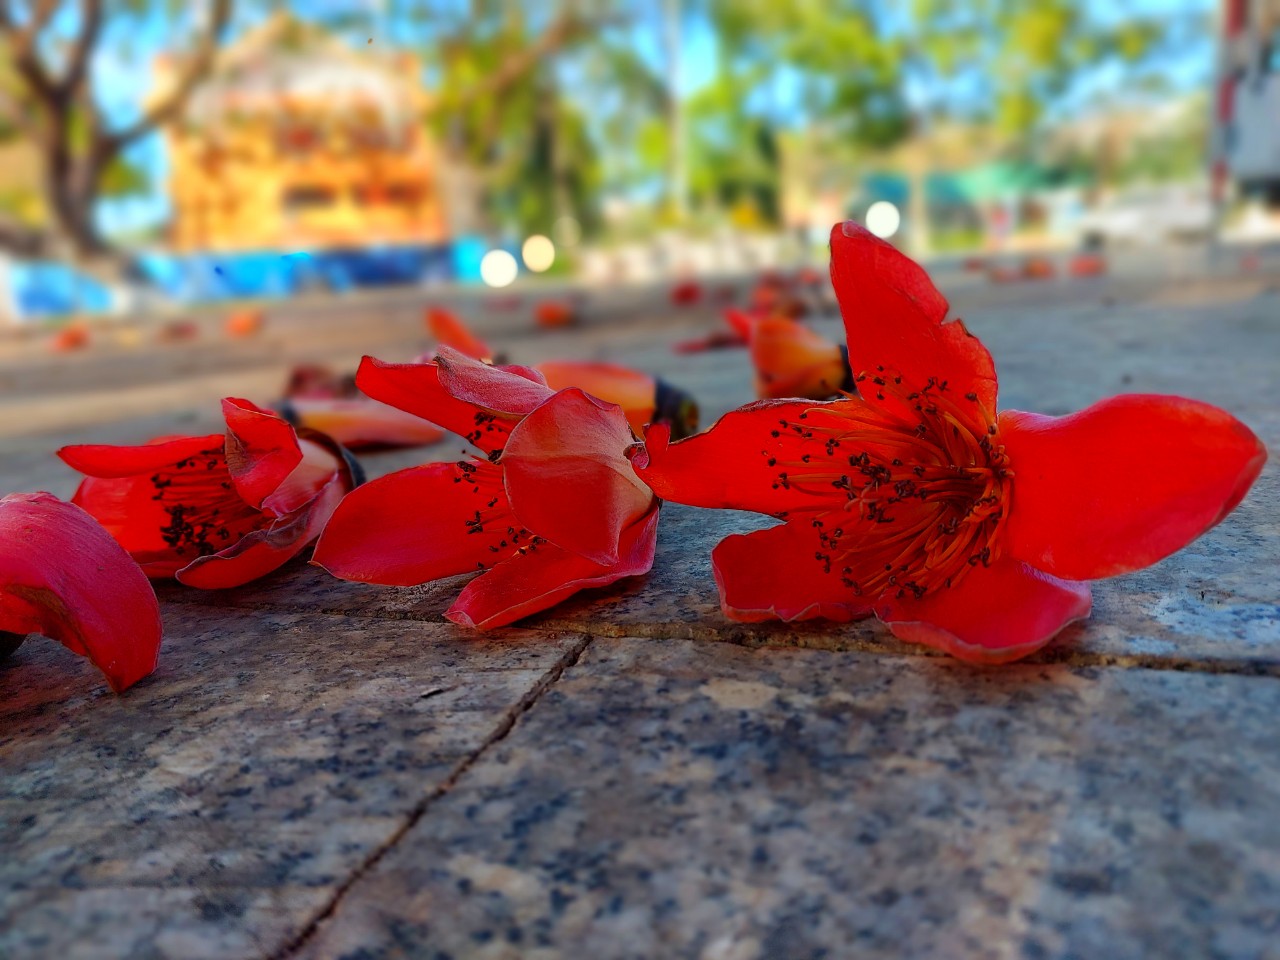 Loài hoa tên nghe như muốn hát, đẹp cuốn hút, đỏ say mê ở Đắk Lắk thực ra là hoa gì rất quen? - Ảnh 7.